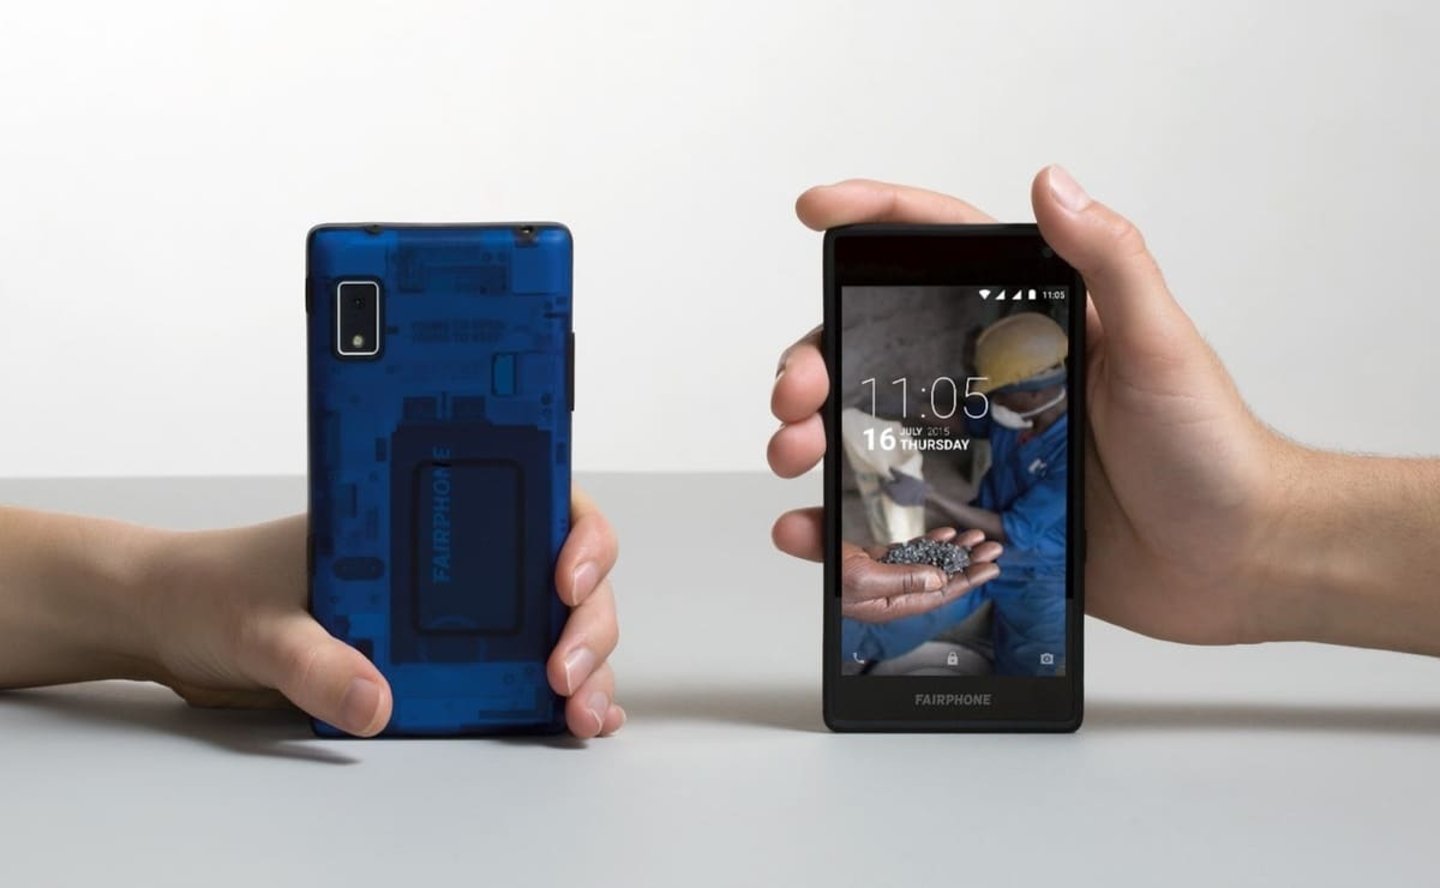 Un móvil Android con un tamaño suficiente, el Fairphone 2